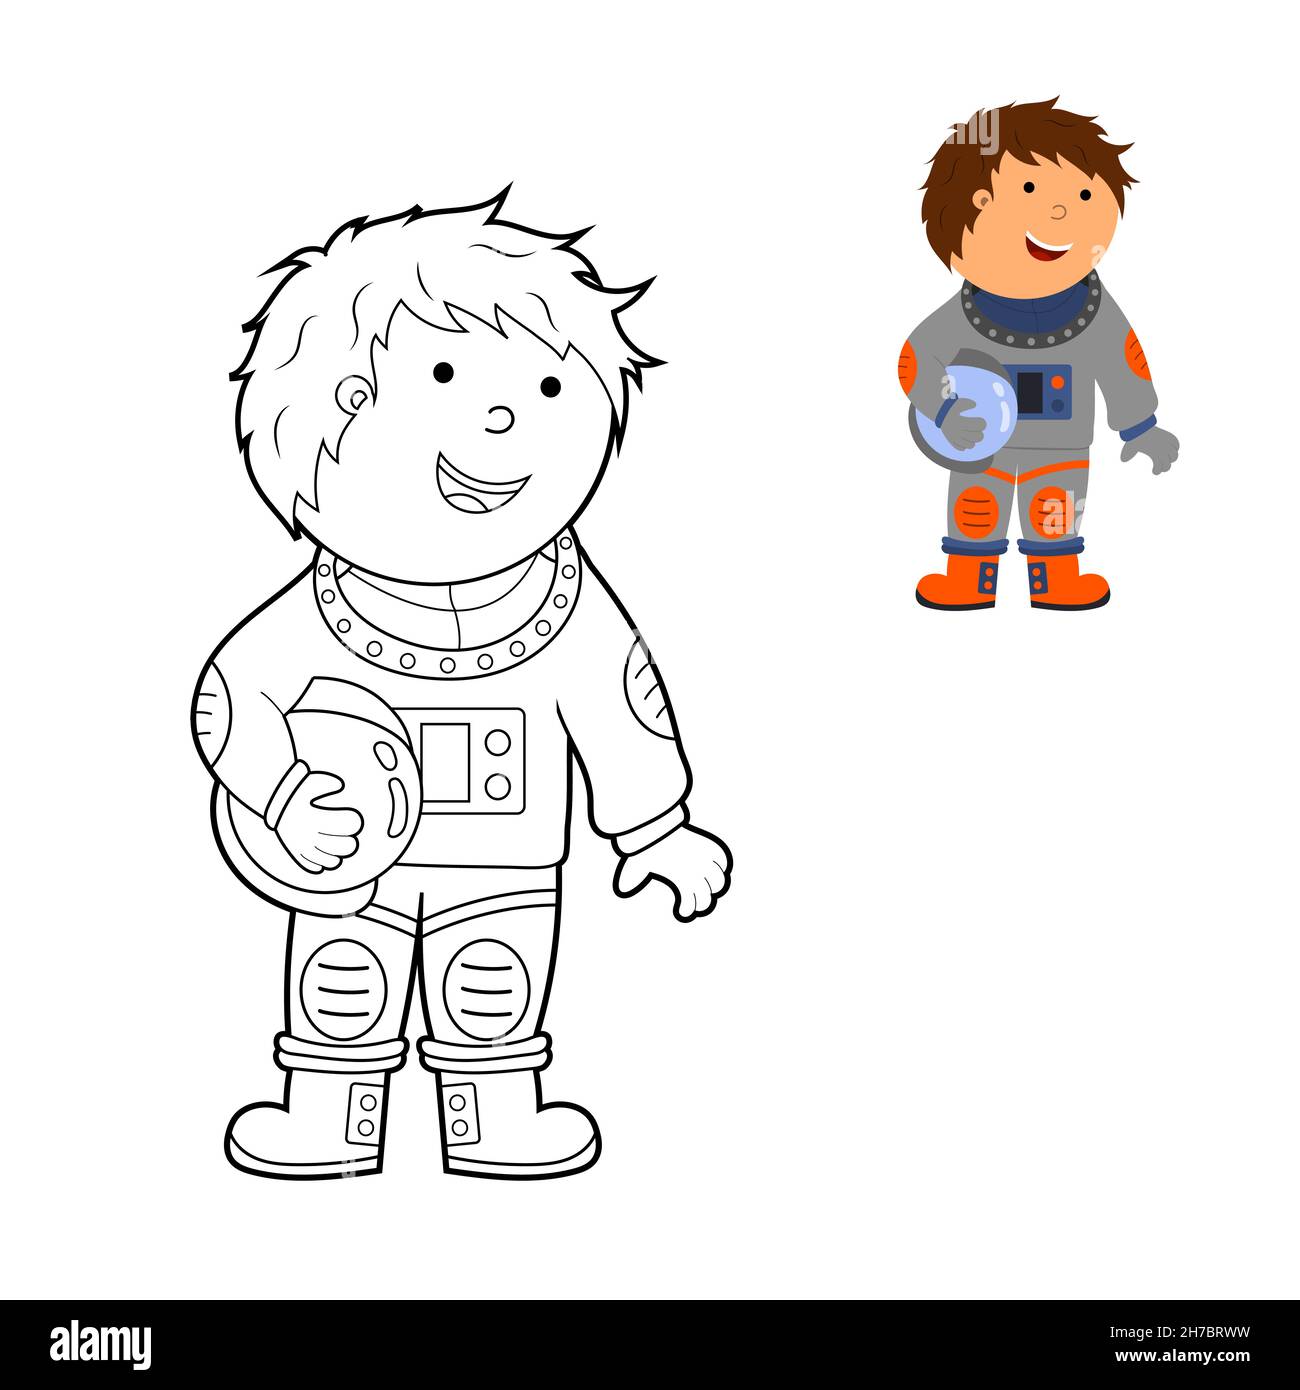 livre de coloriage, colorier une illustration de dessin animé d'un astronaute dans l'espace, vecteur isolé sur un fond blanc. Illustration de Vecteur